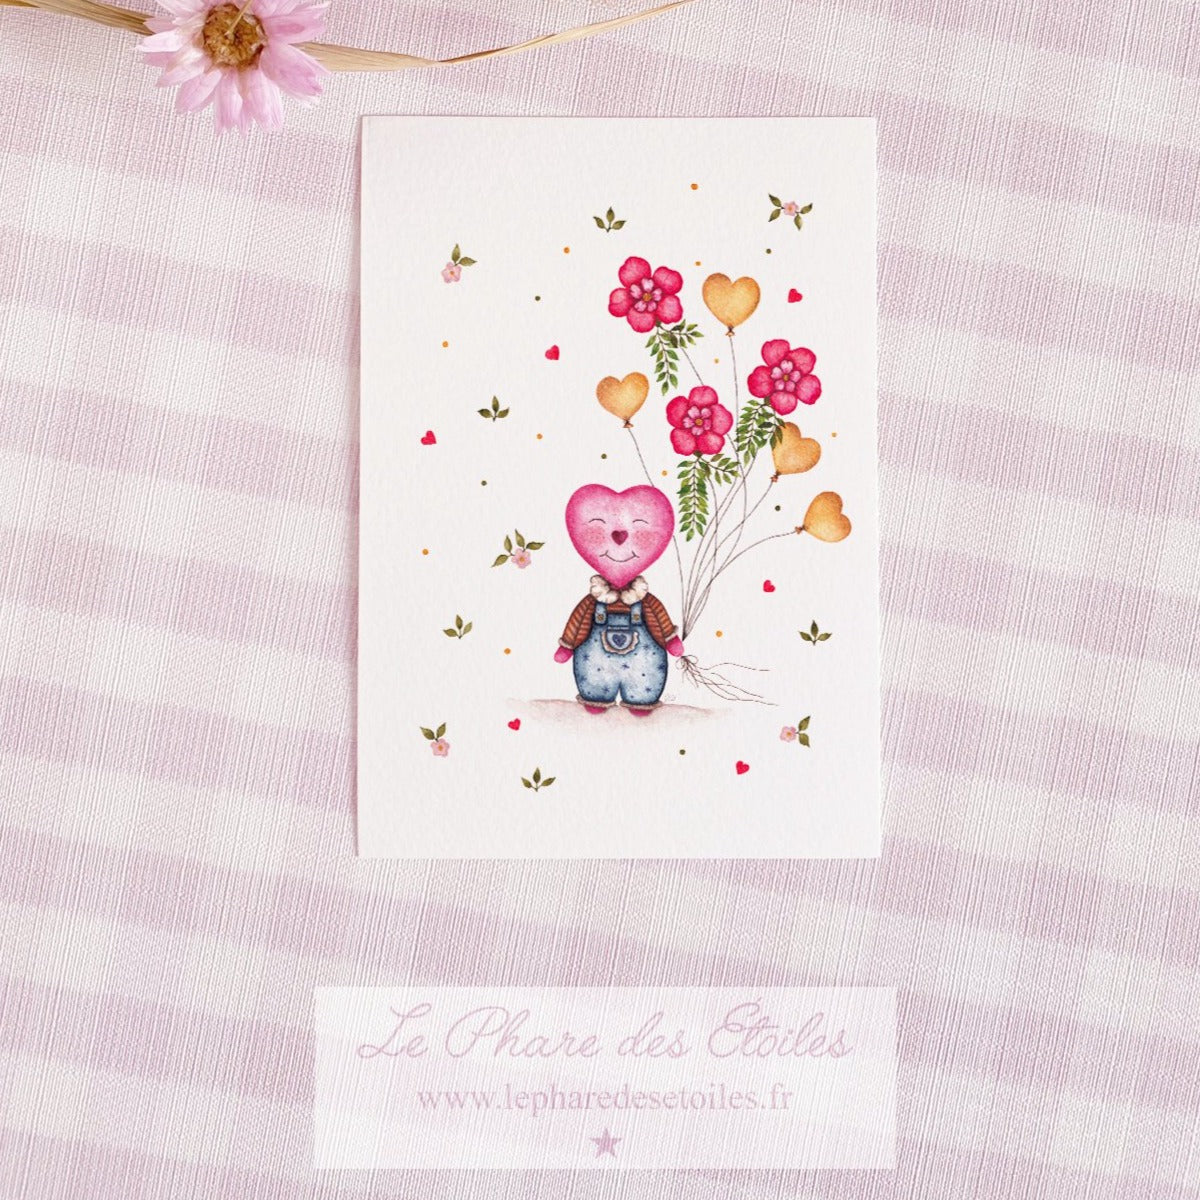 Carte illustrée à l'aquarelle sur le thème du printemps, des fleurs. Personnage coeur. Format A6 carte postale. Enveloppe offerte sur simple demande.